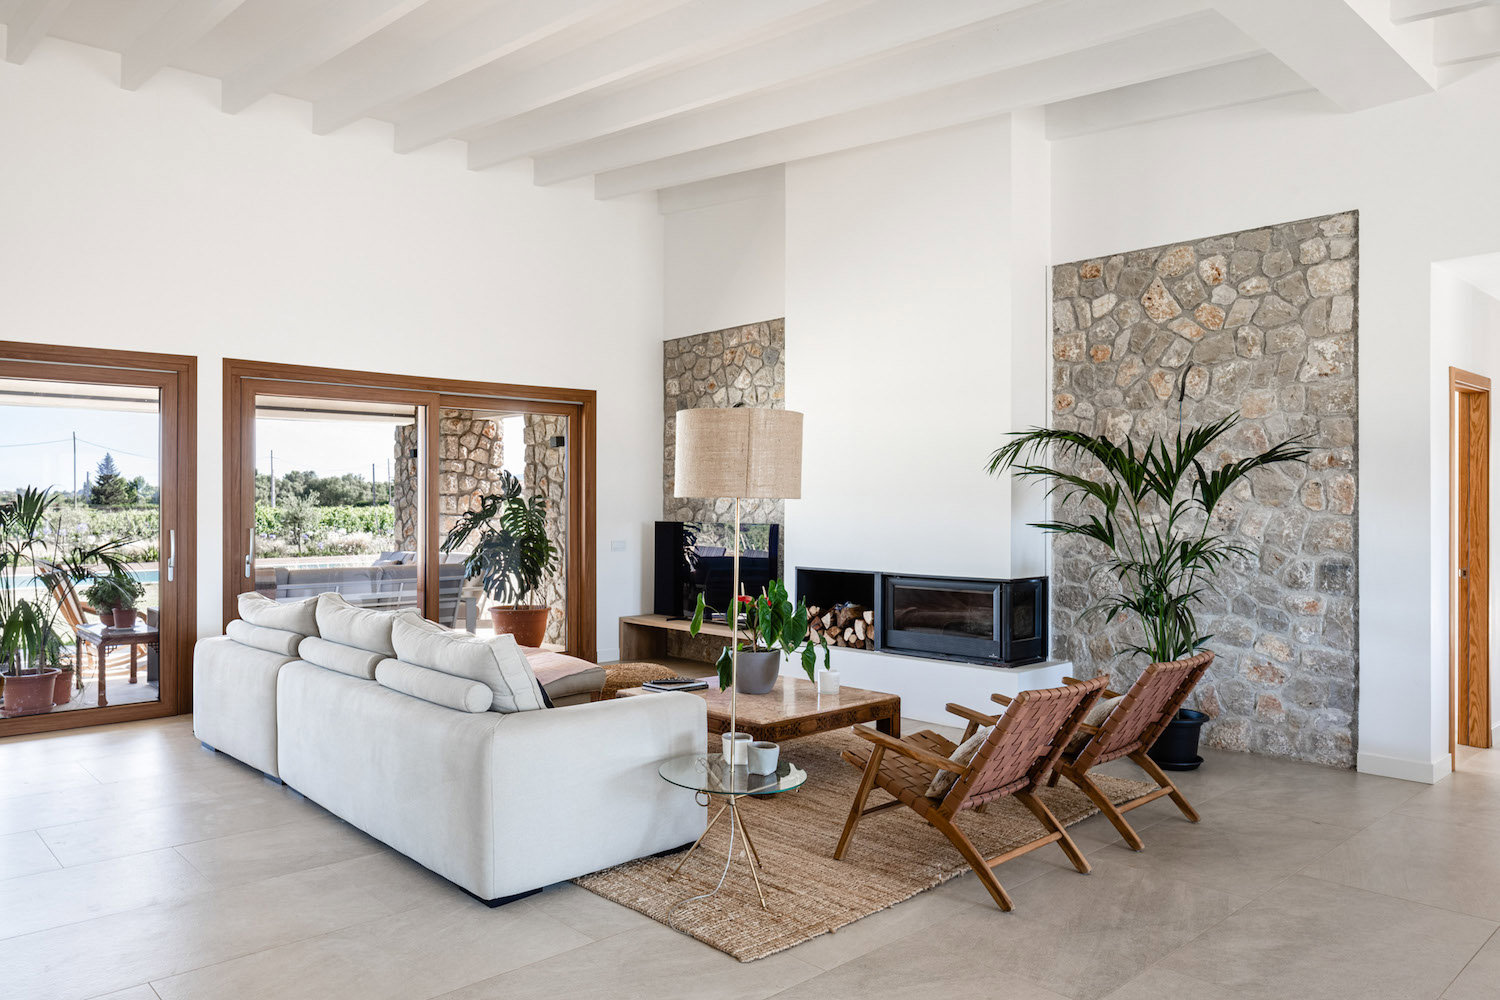 Salón diseñado de forma rústica y moderna con plantas, alfombra de yute, sofá blanco y elegante, chimenea elegante y moderna, pared de piedra y sillas en color terracota. 